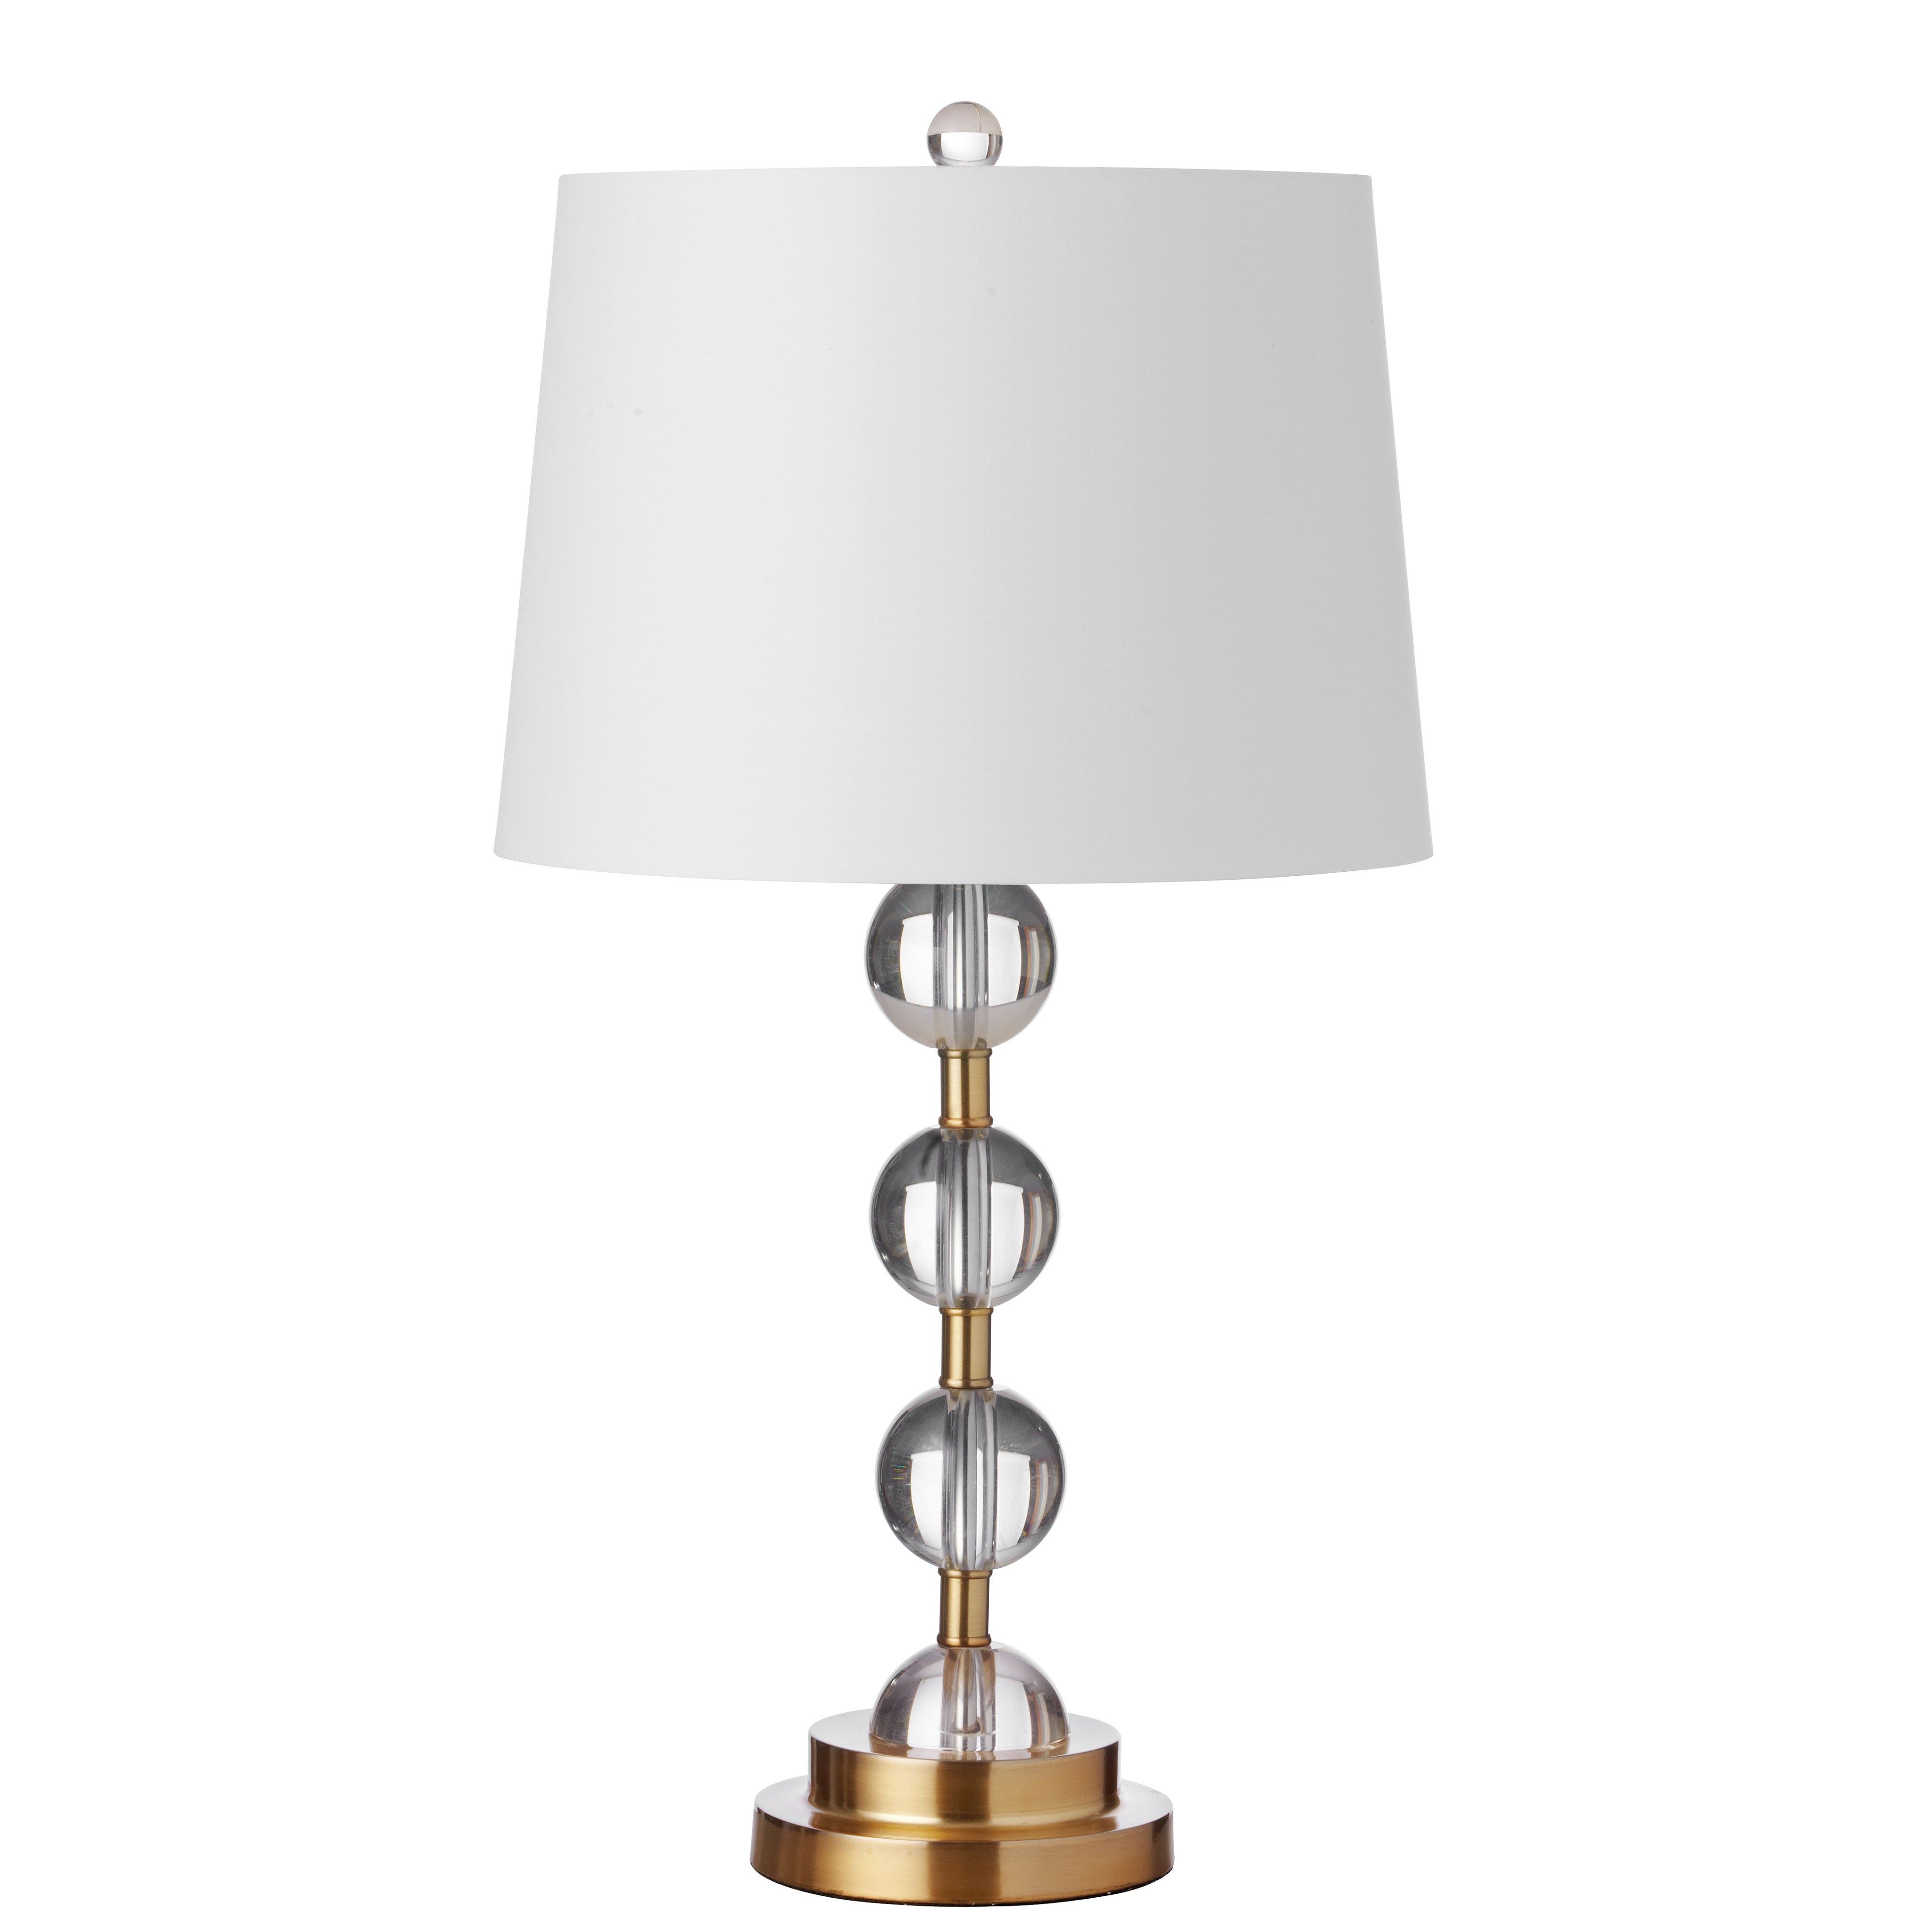 Lampe sur table Or - C182T-AGB | DAINOLITE